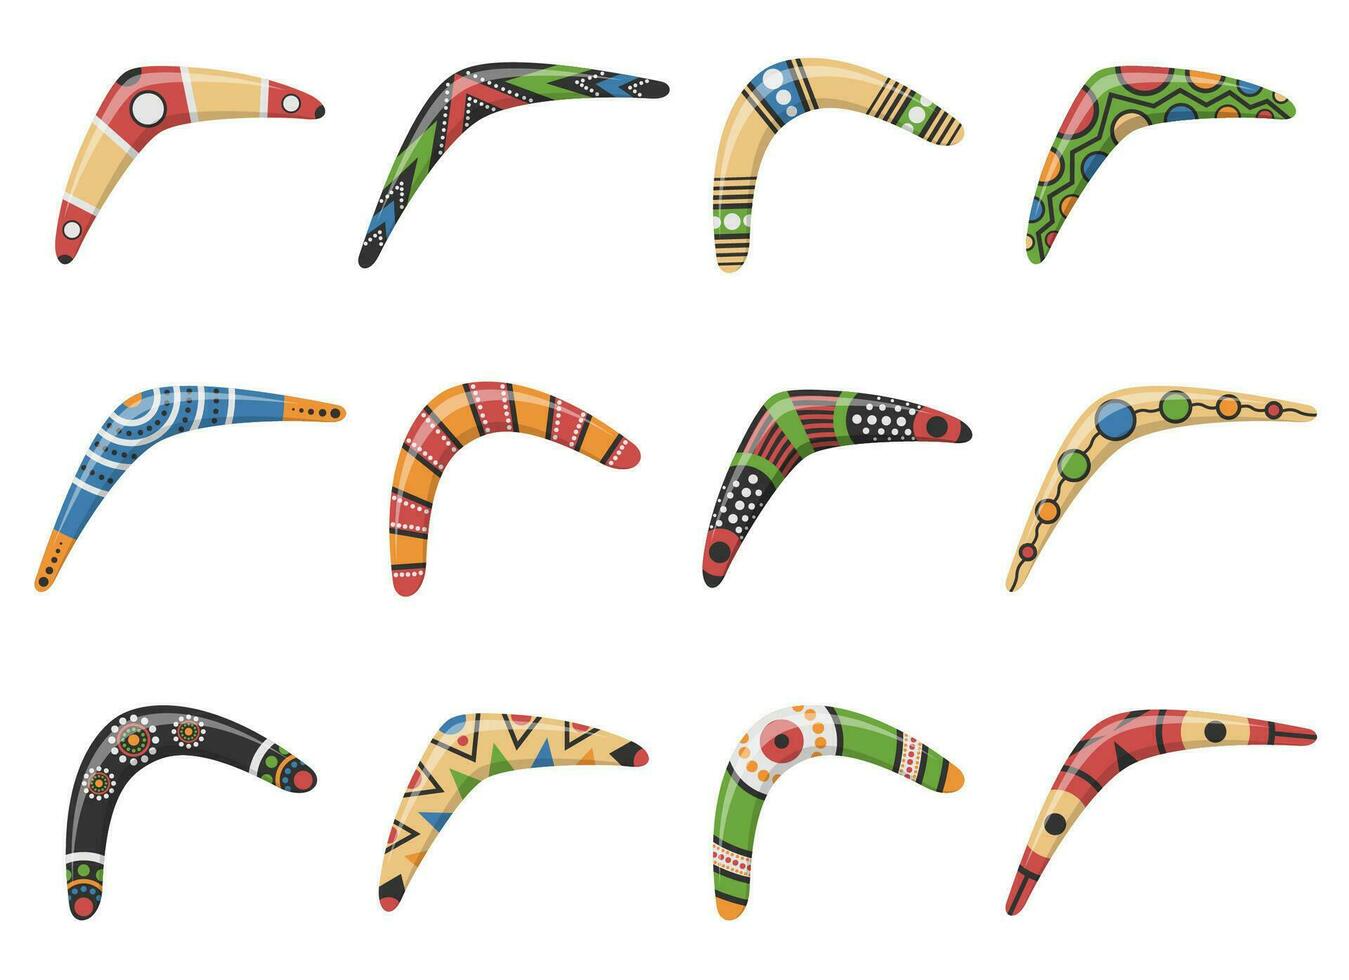 traditioneel houten boemerang van verschillend vormen pictogrammen reeks geïsoleerd Aan wit achtergrond. Australisch inheems jacht- en sport wapen. aboriginal houten boemerangs. vector illustratie.